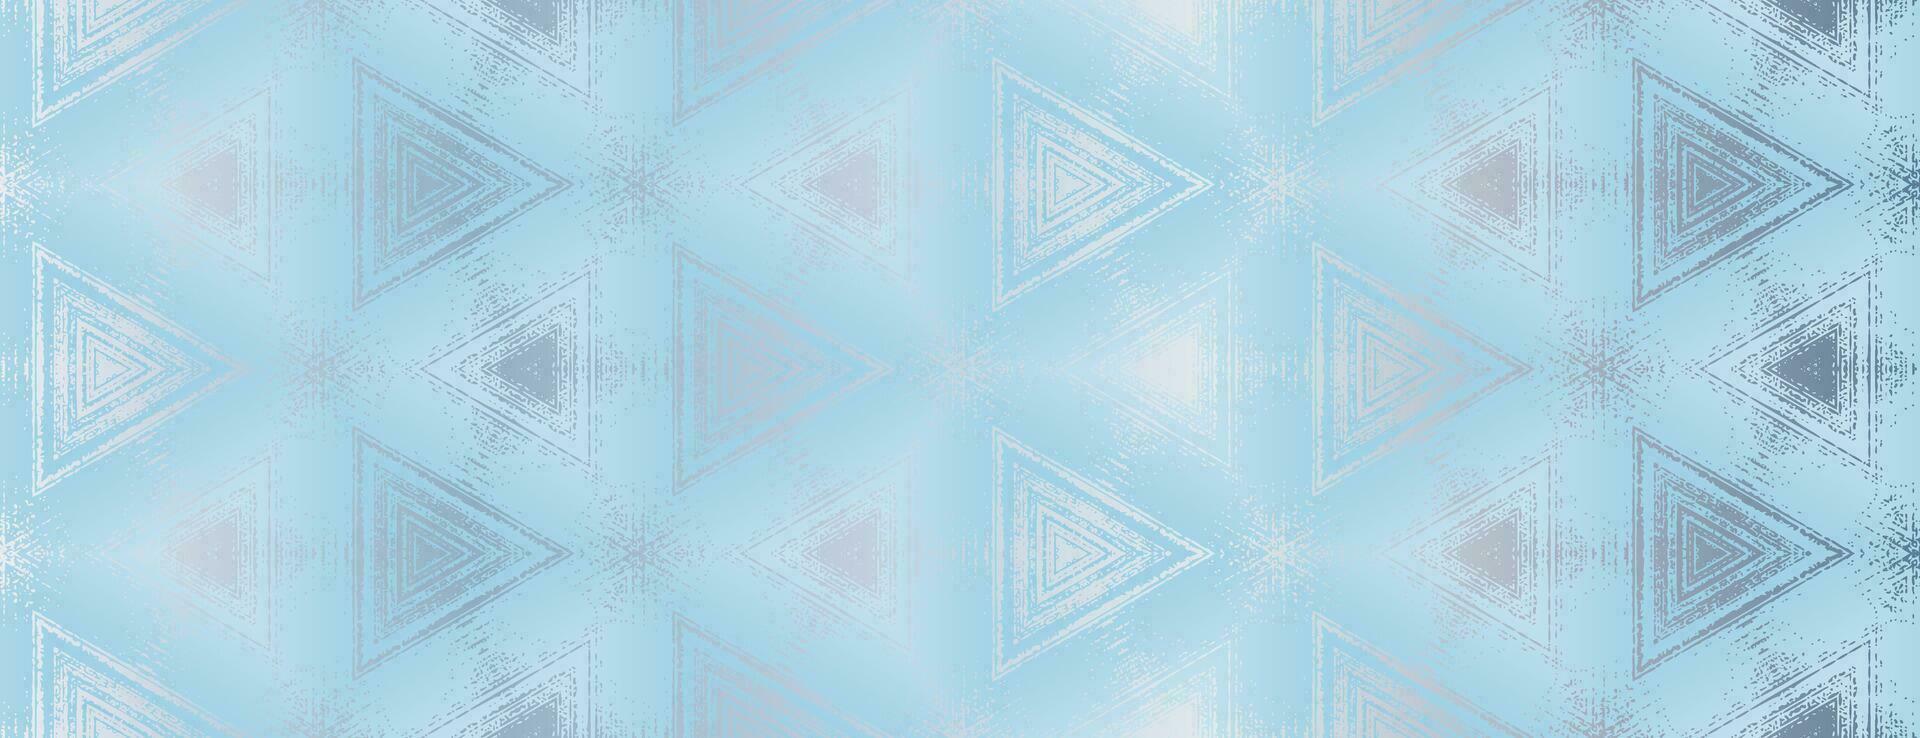 abstract zilver en licht blauw getextureerde driehoeken patroon. meetkundig ornament voor ontwerp, poster, banier, verpakking ontwerp, omhulsel papier, behang, achtergrond. vector illustratie.